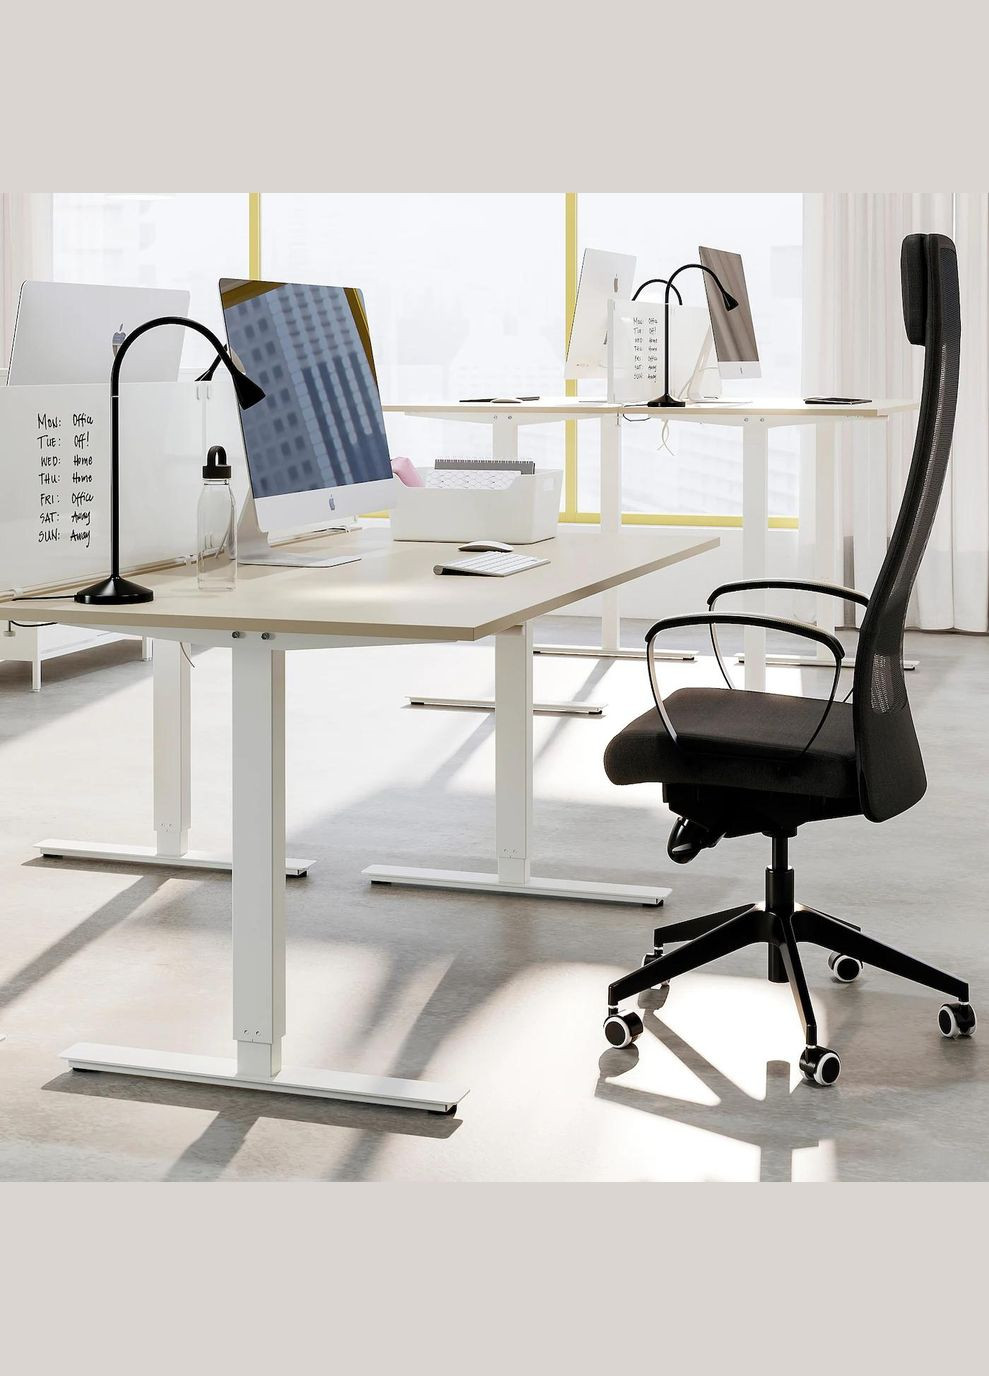 Регульований по висоті стіл ІКЕА TROTTEN 160х80 см (s29434130) IKEA (278407603)